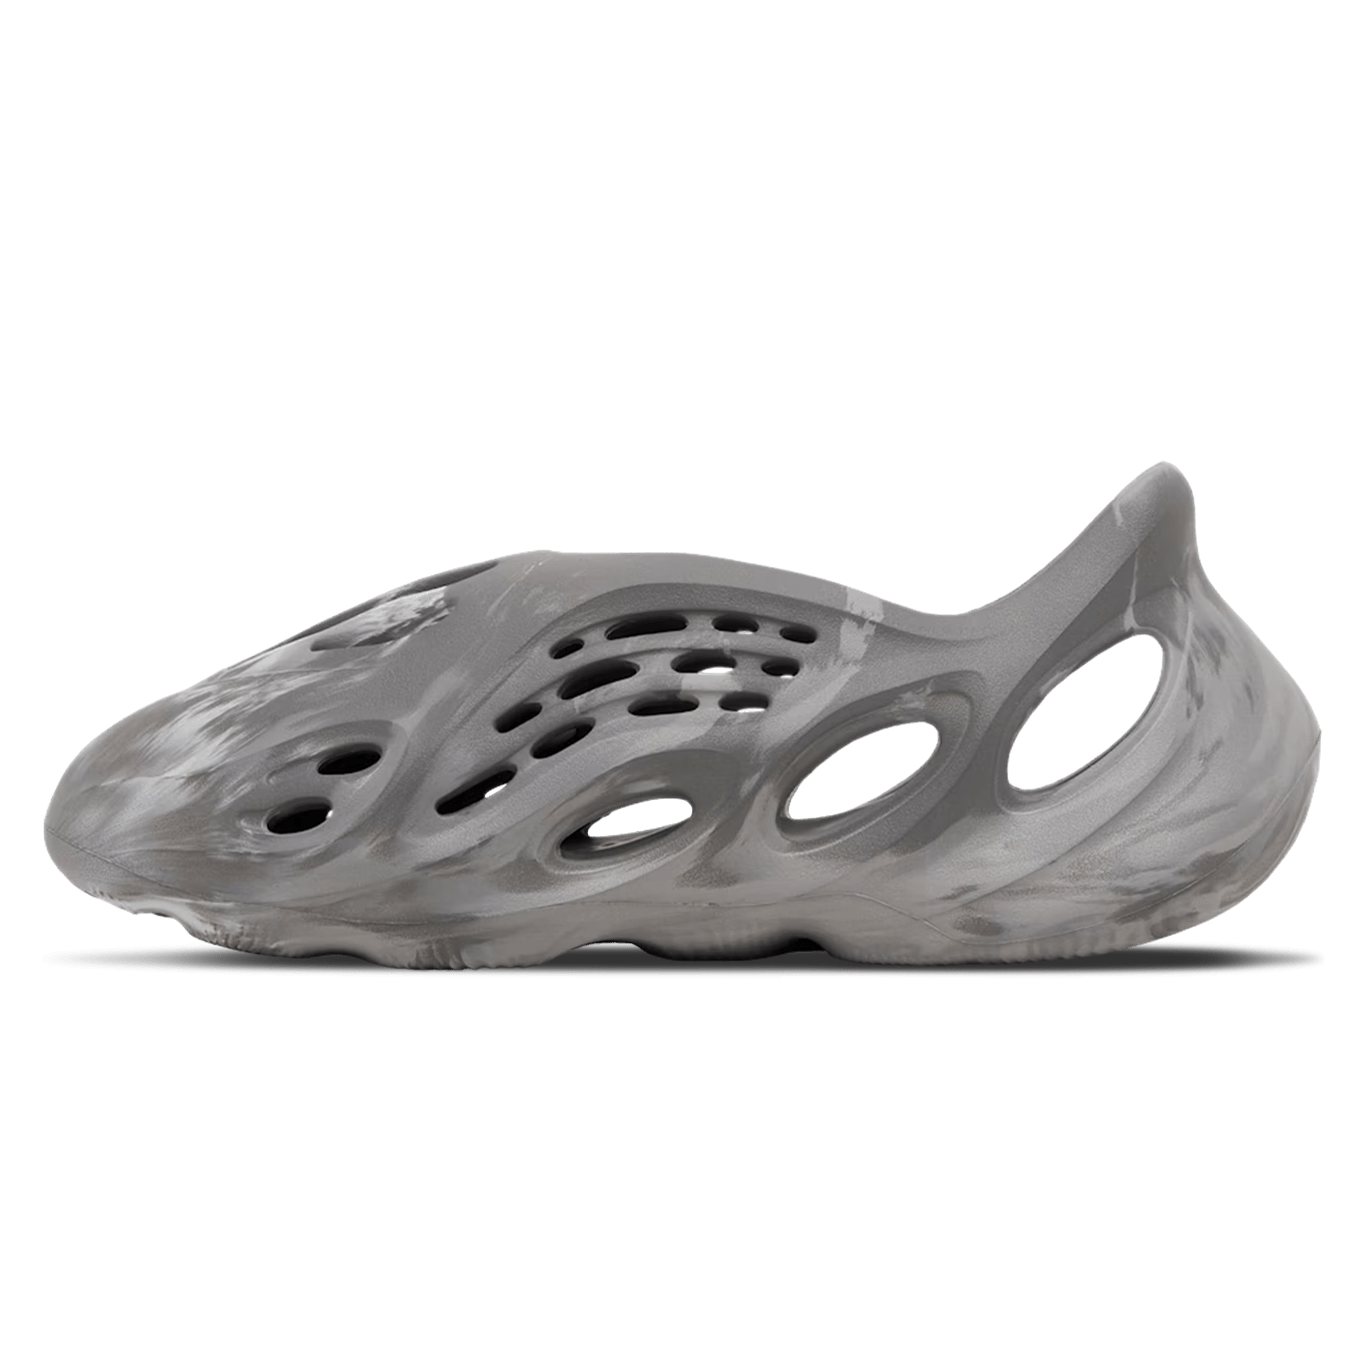 adidas Yeezy Foam Runner 'MX Granite' — Kick Game